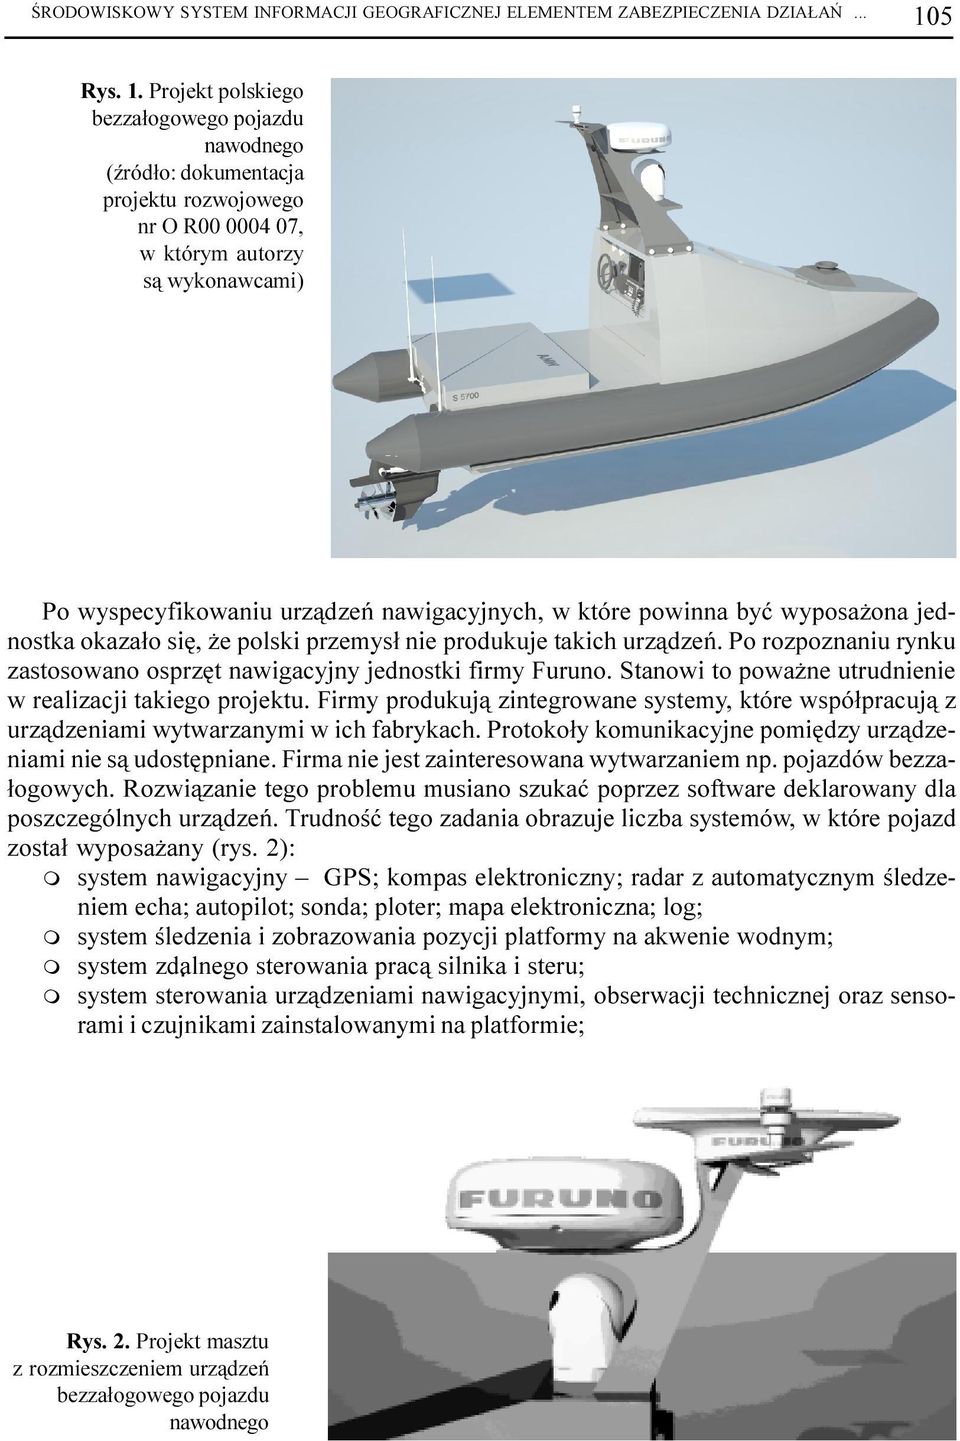 Projekt polskiego bezza³ogowego pojazdu nawodnego (Ÿród³o: dokuentacja projektu rozwojowego nr O R00 0004 07, w który autorzy s¹ wykonawcai) Po wyspecyfikowaniu urz¹dzeñ nawigacyjnych, w które